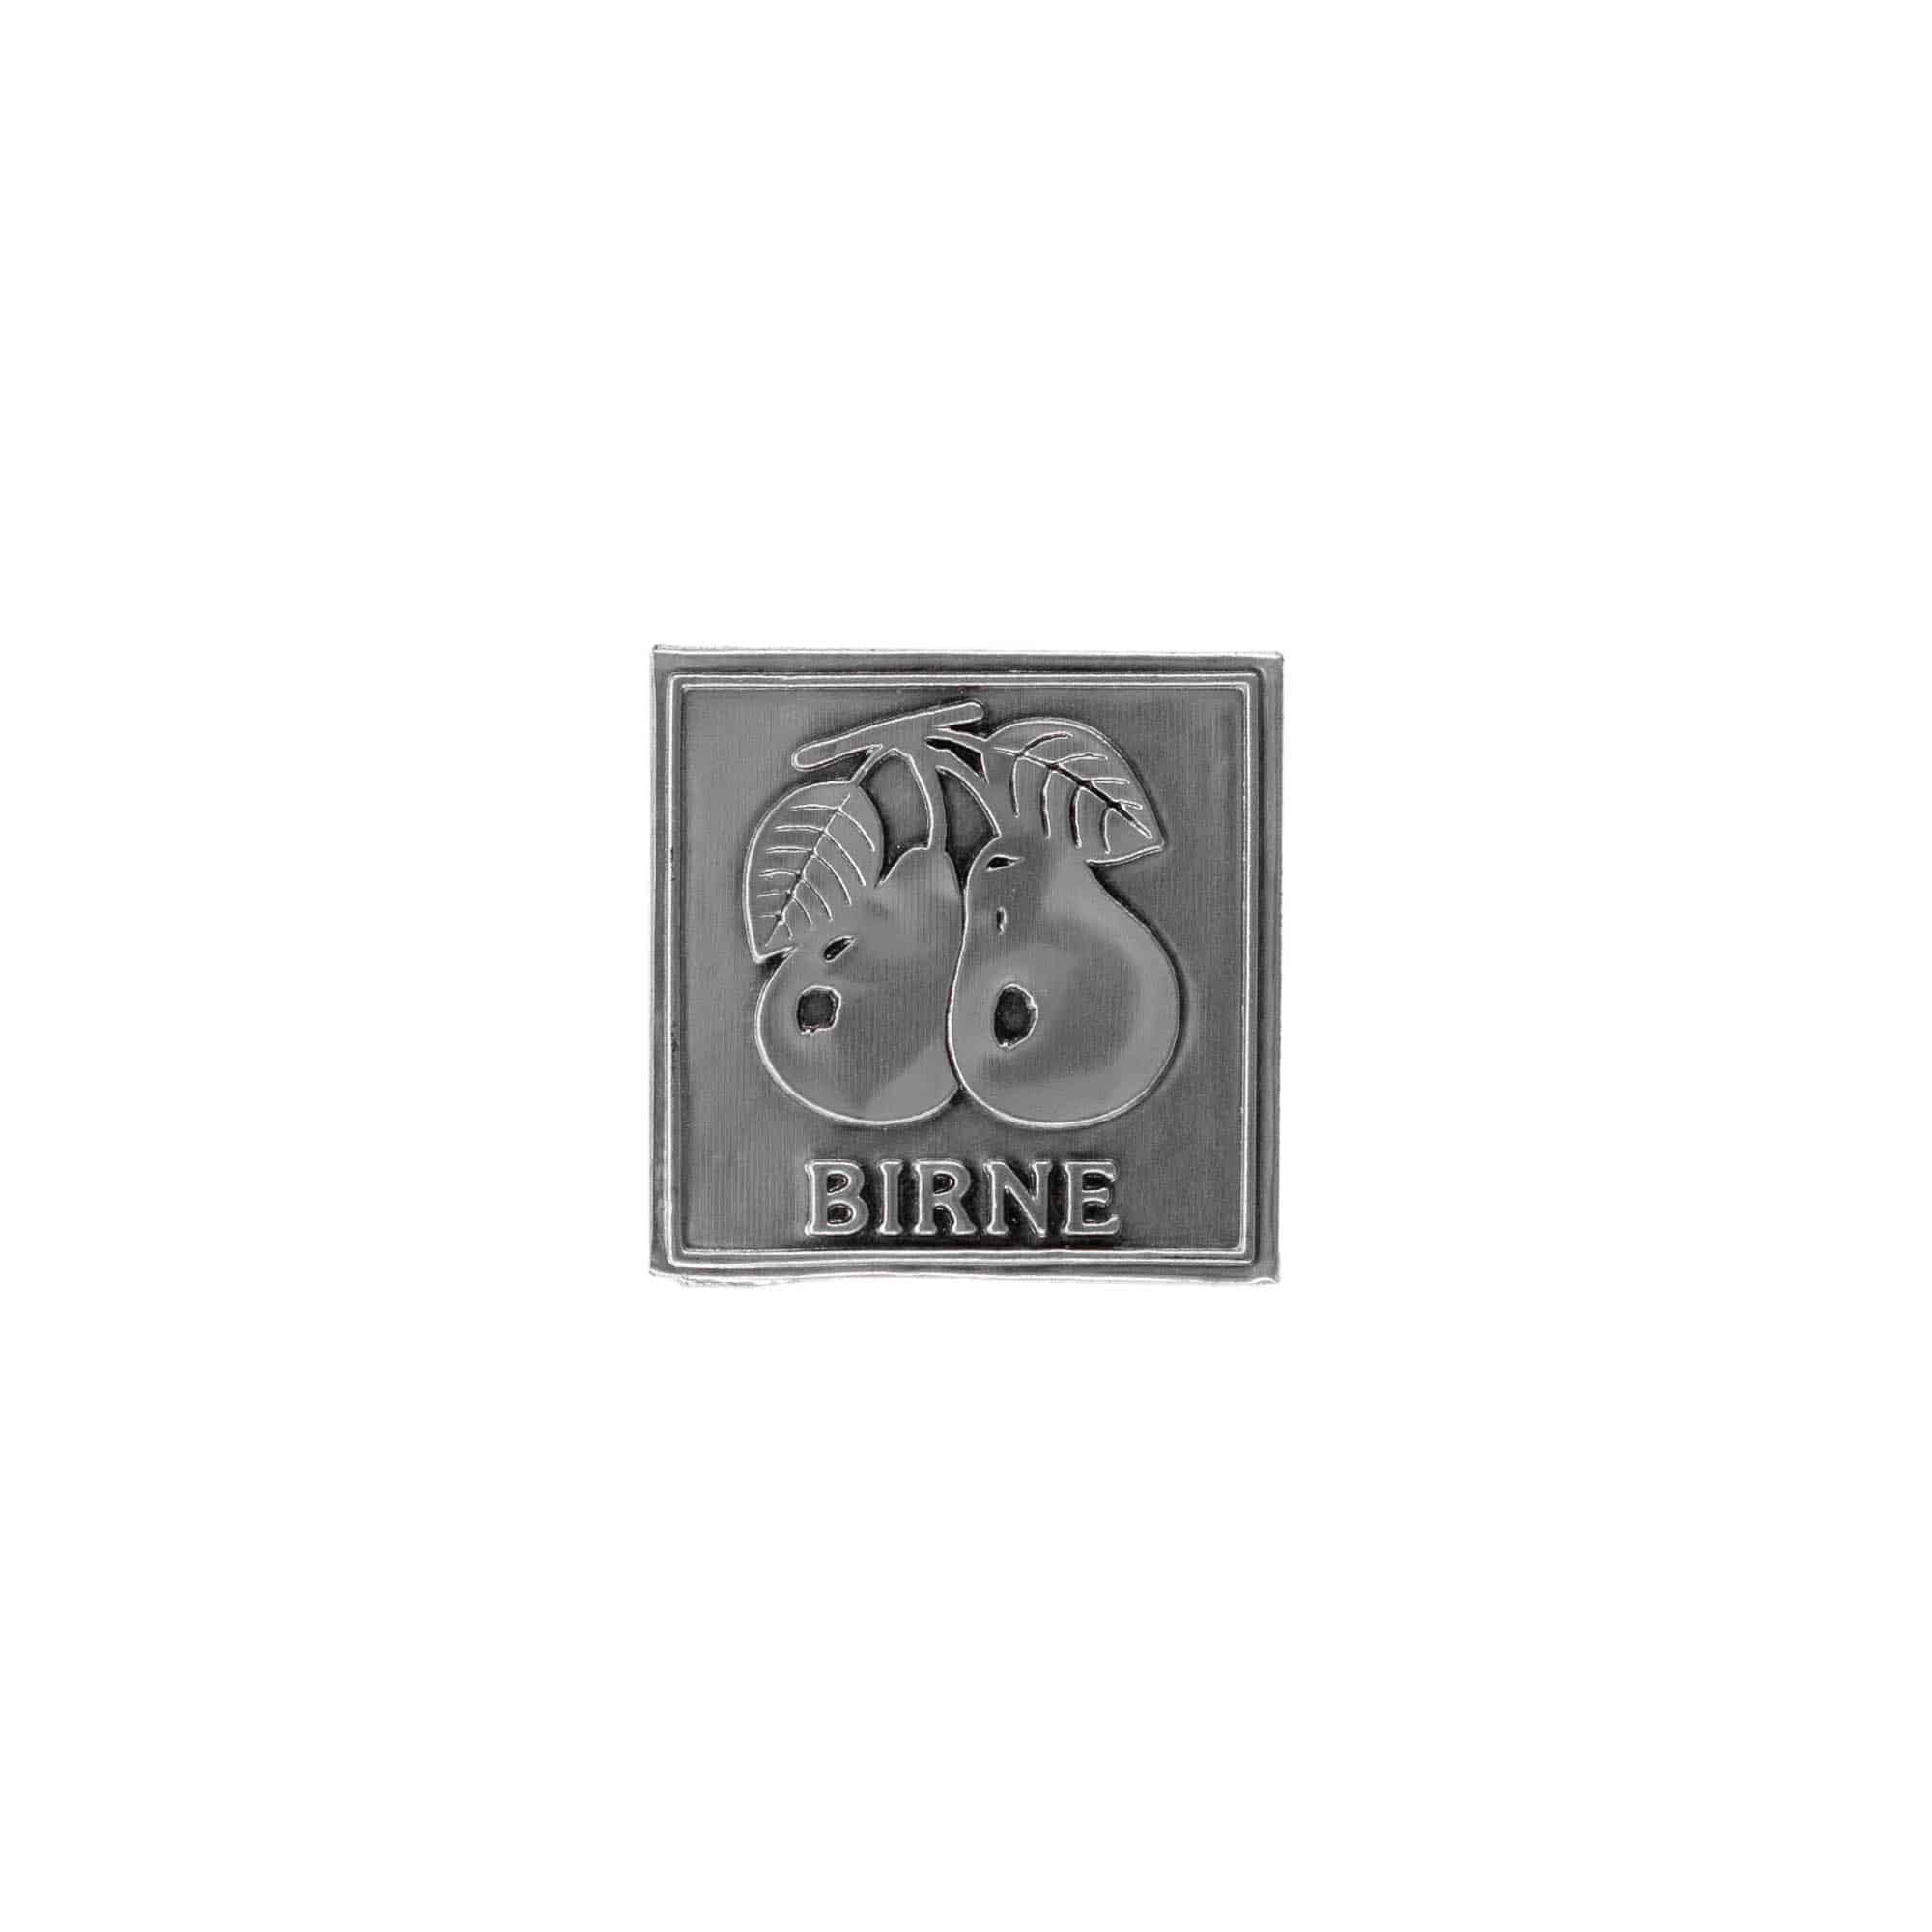 Zinnetikett 'Birne', quadratisch, Metall, silber